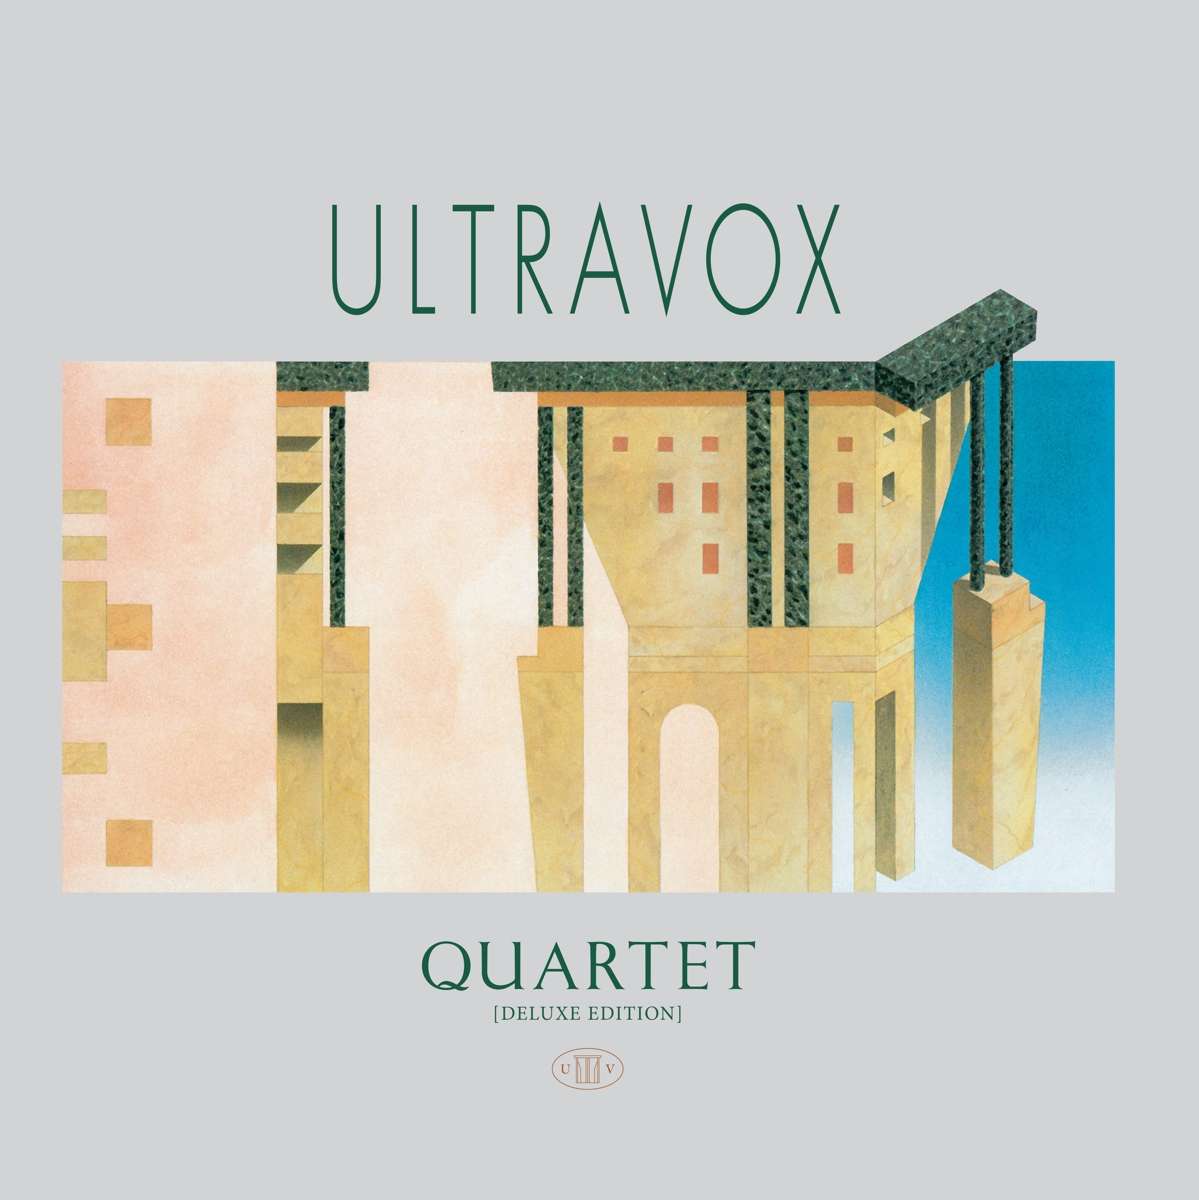 Okładka płyty winylwoej artysty The Ultravox o tytule Quartet